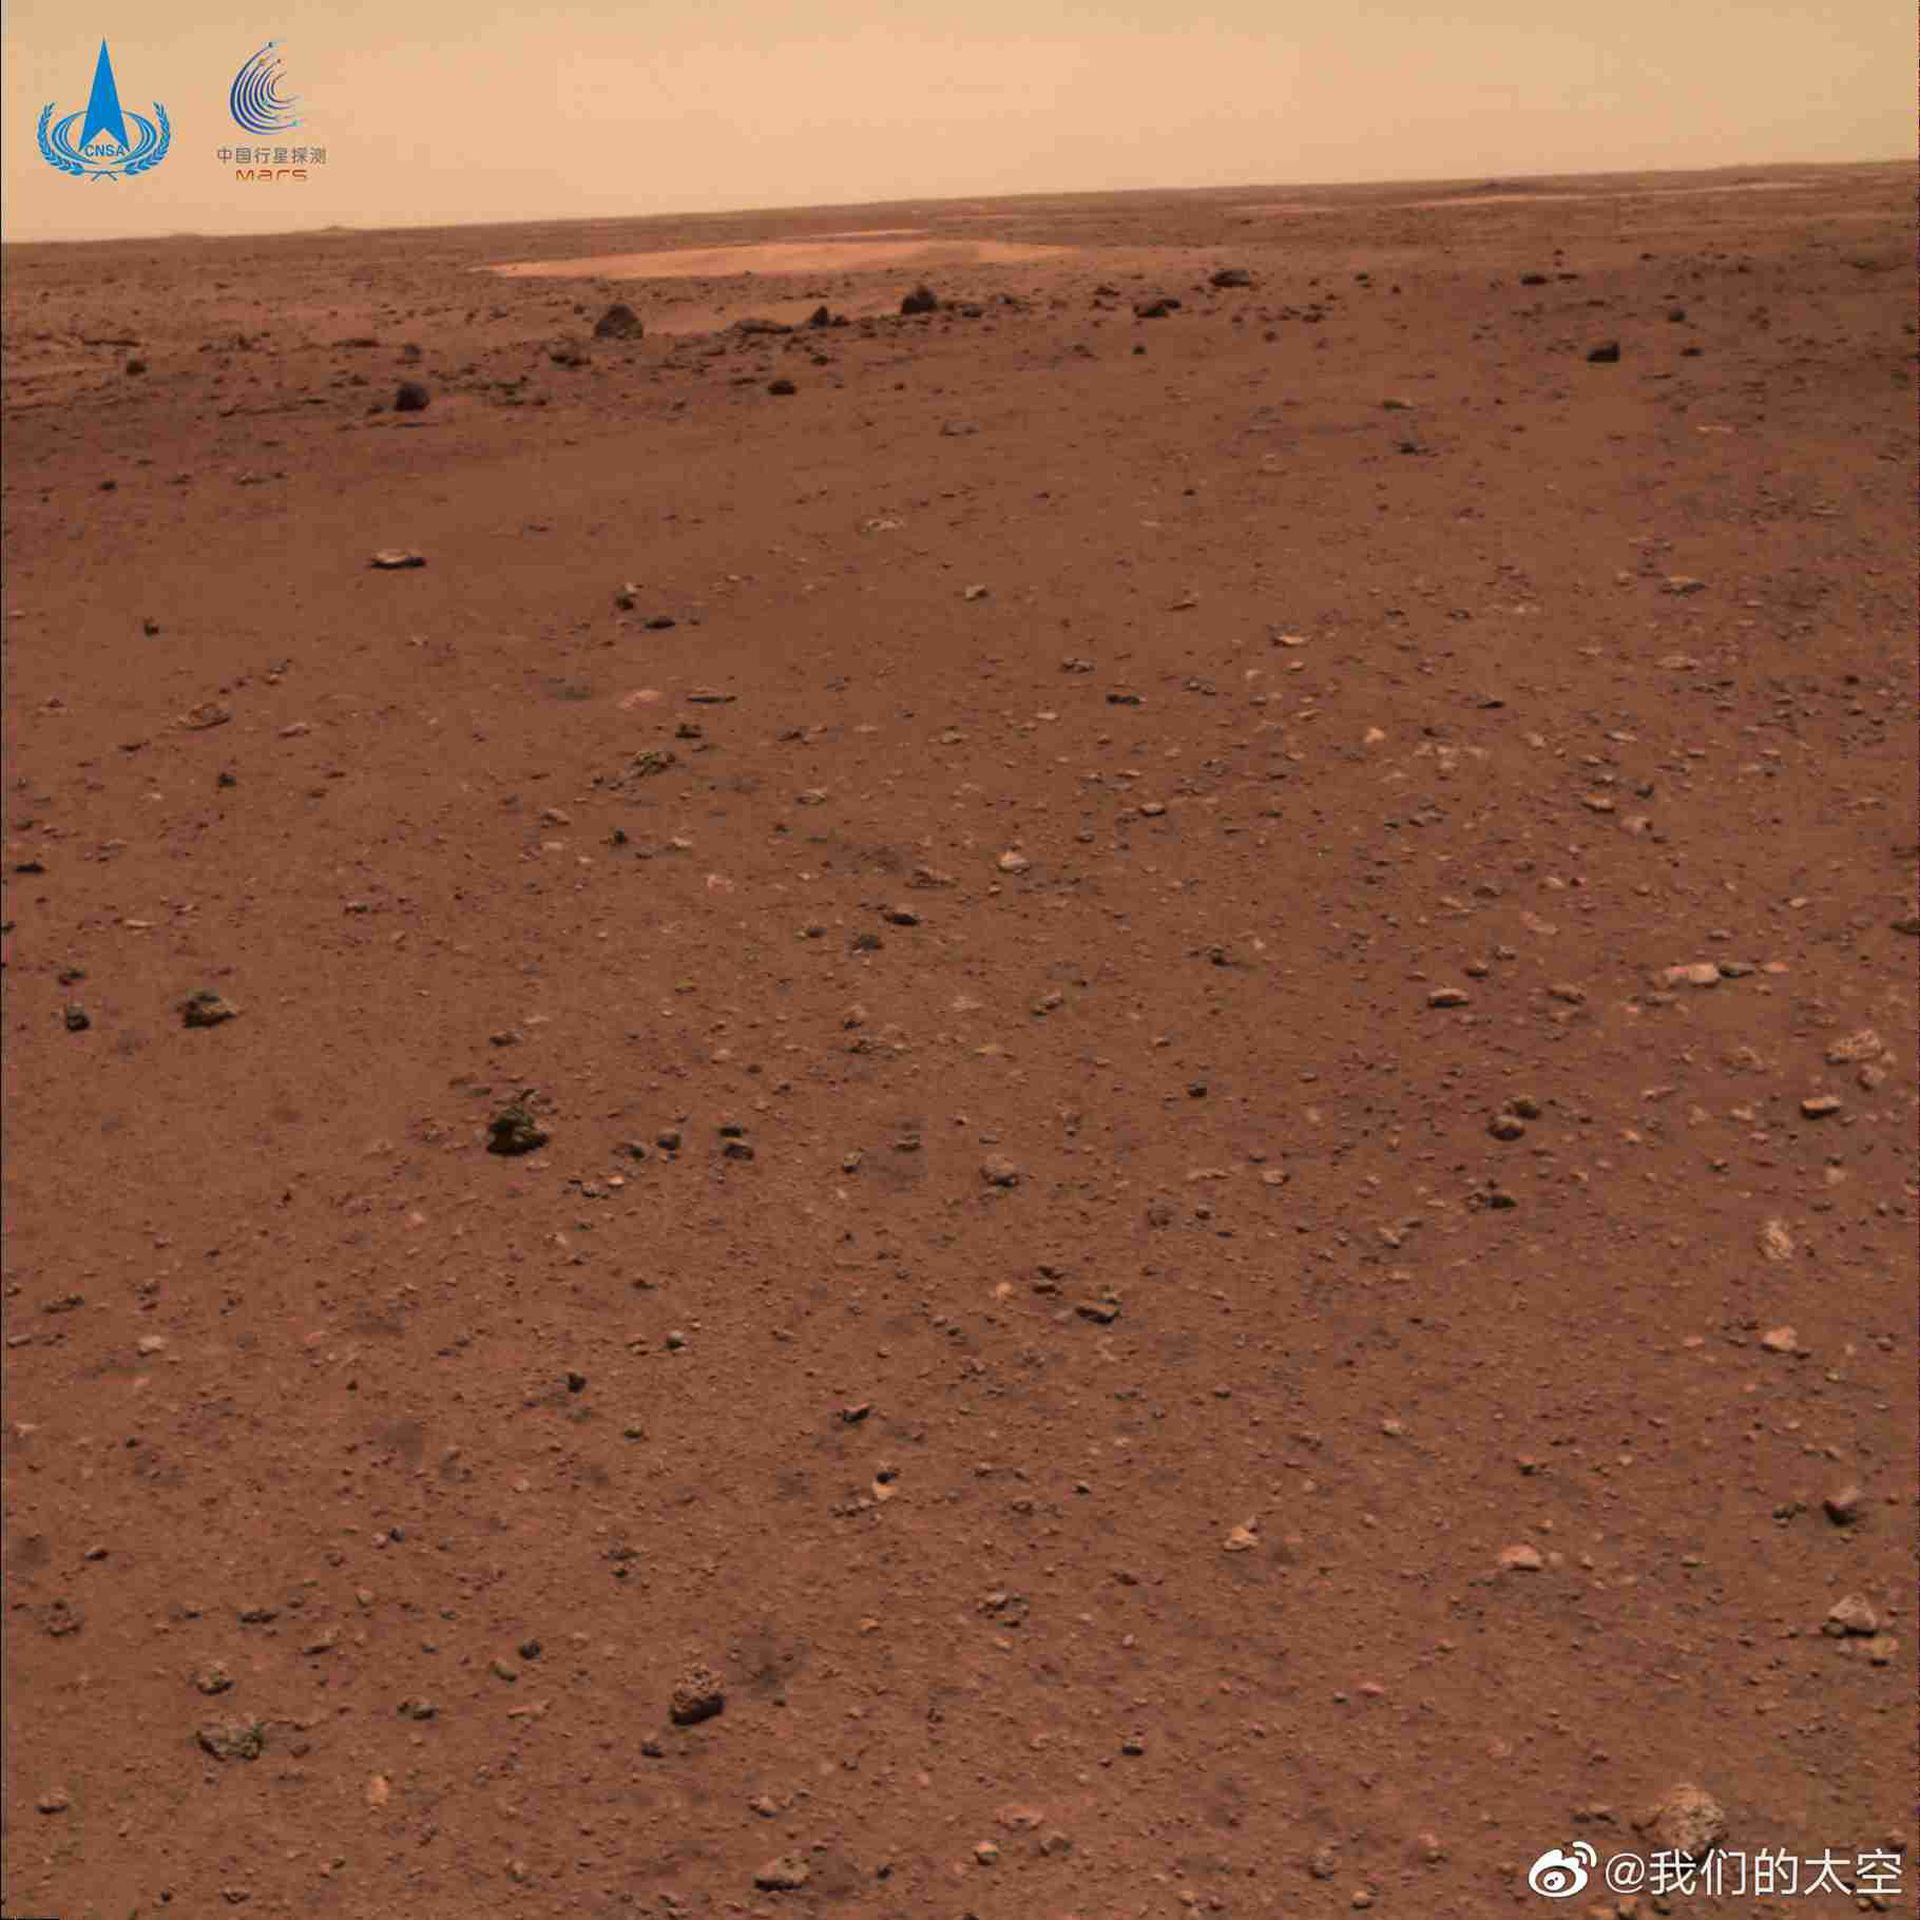 这是由“祝融号”火星车拍摄的火星地形地貌图。（微博@我们的太空）